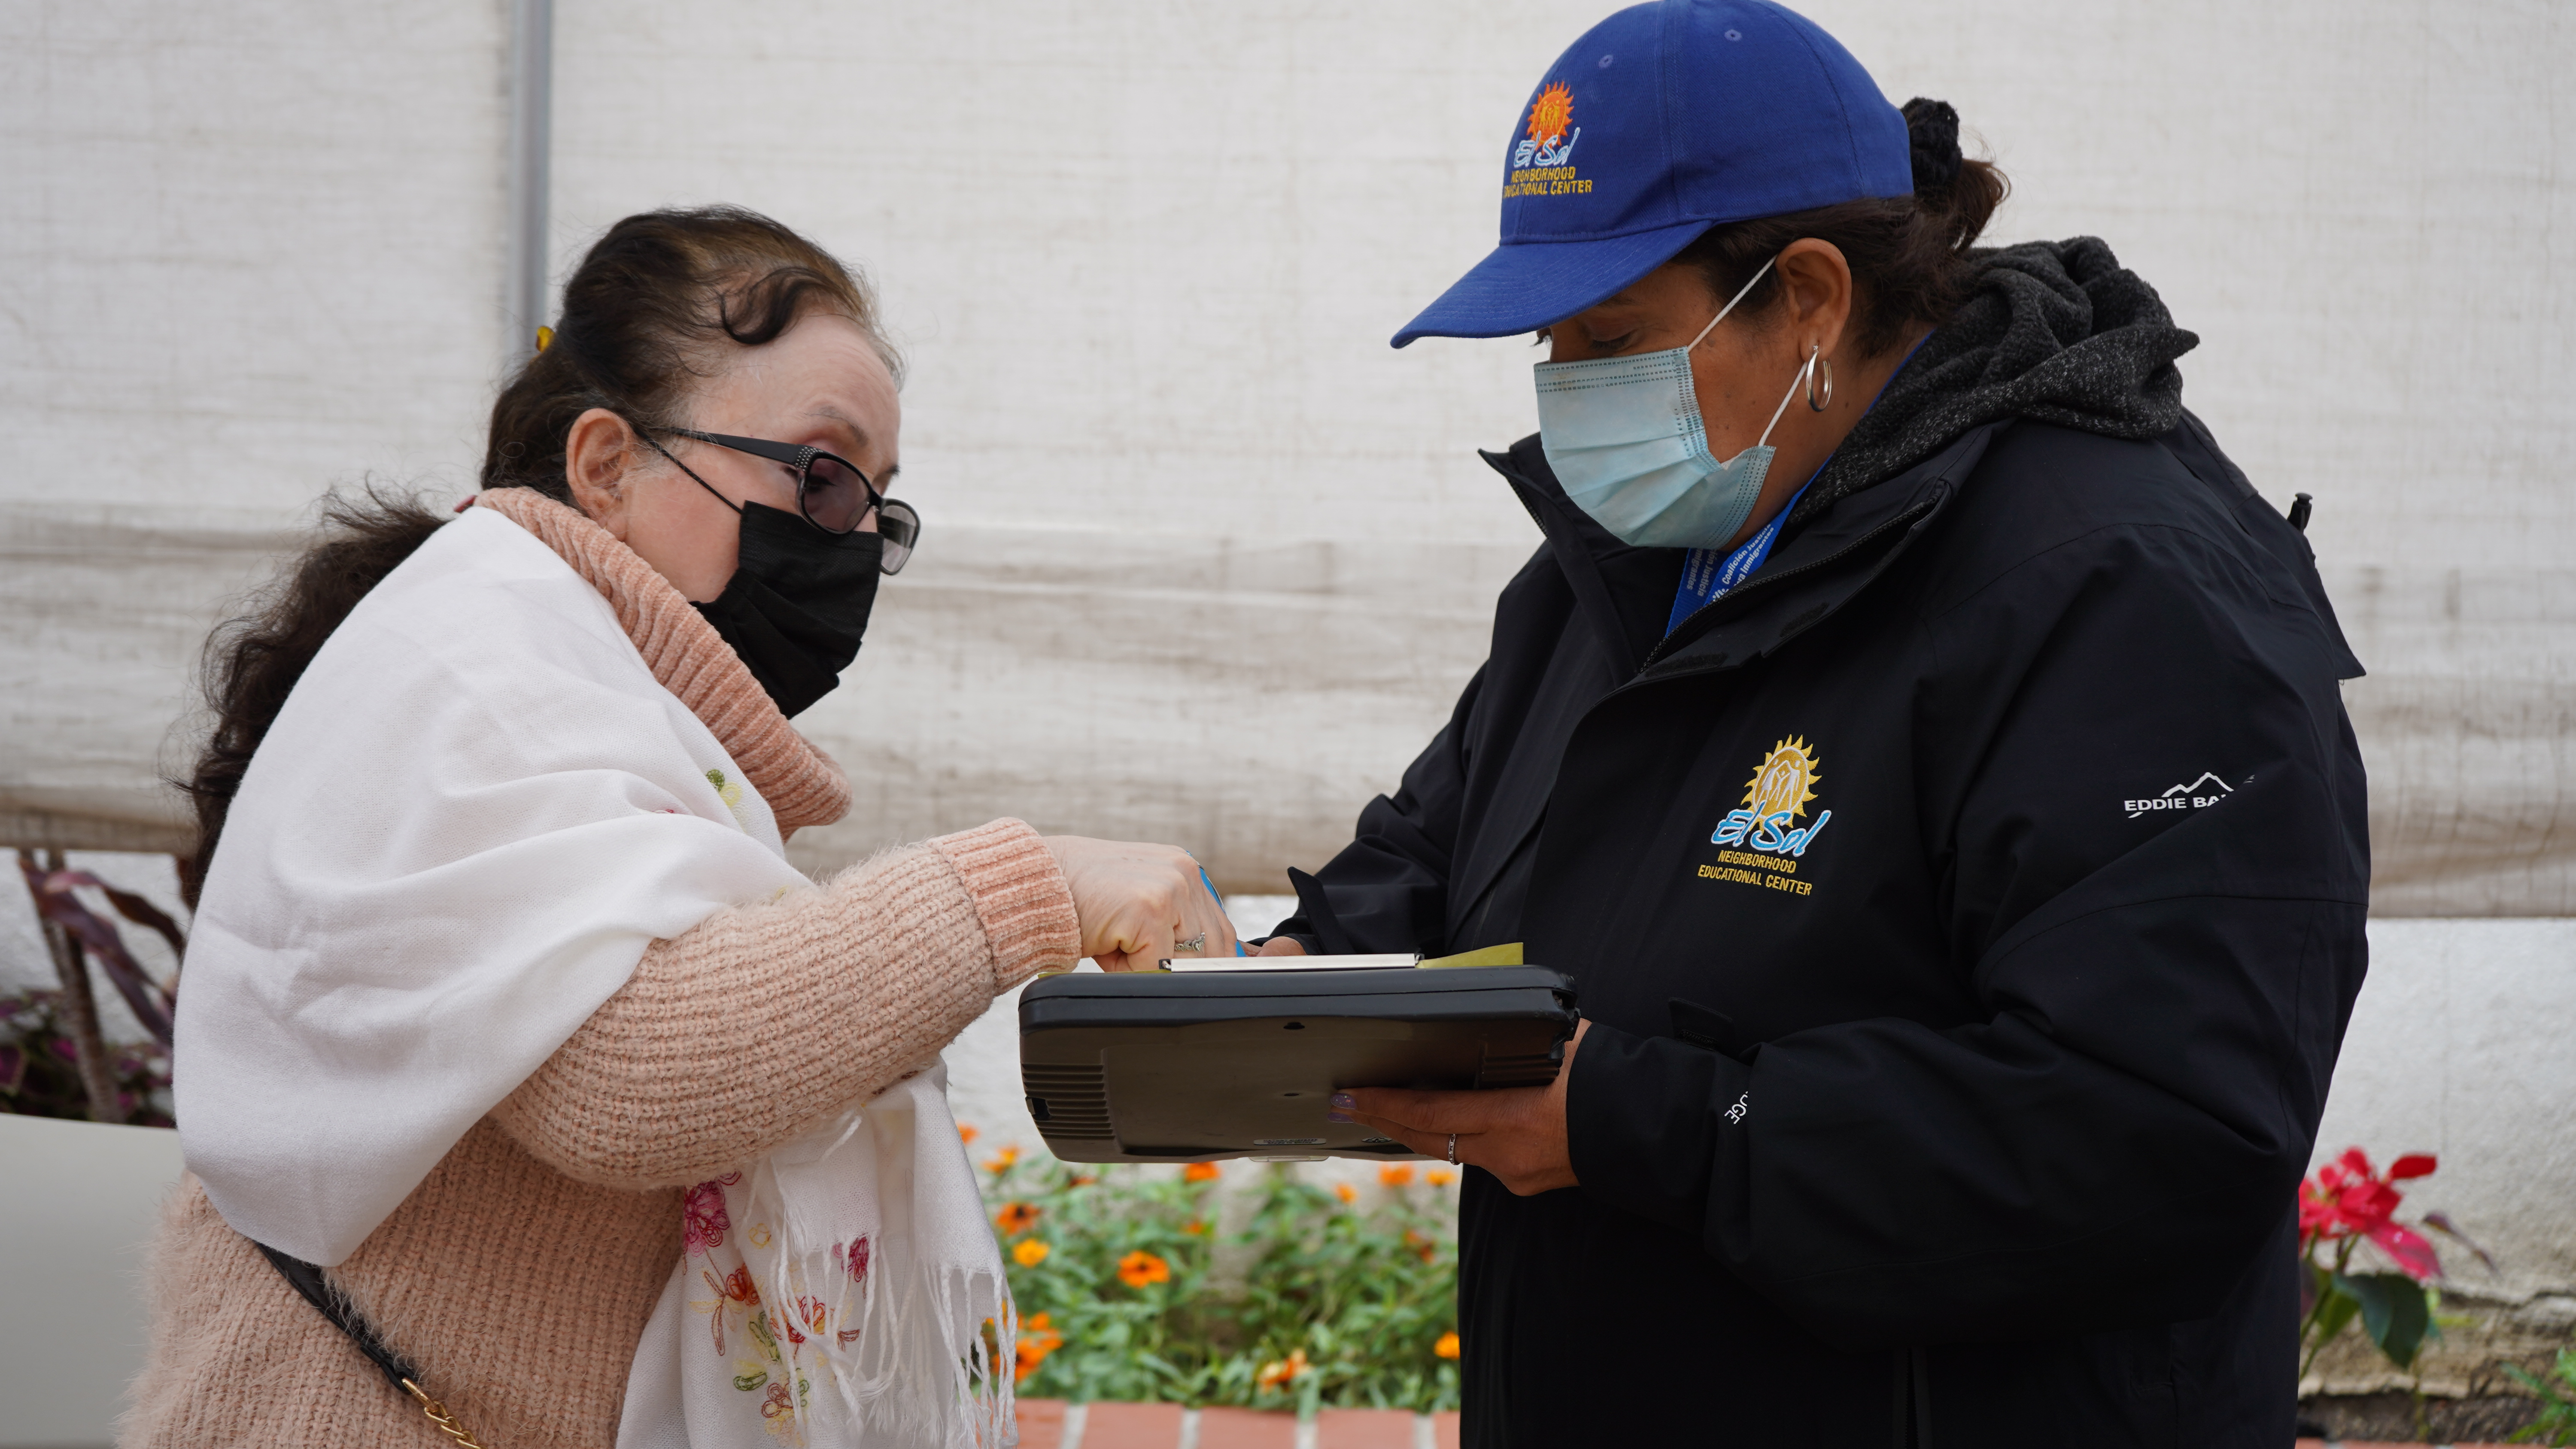 An El Sol community health worker assists a patron